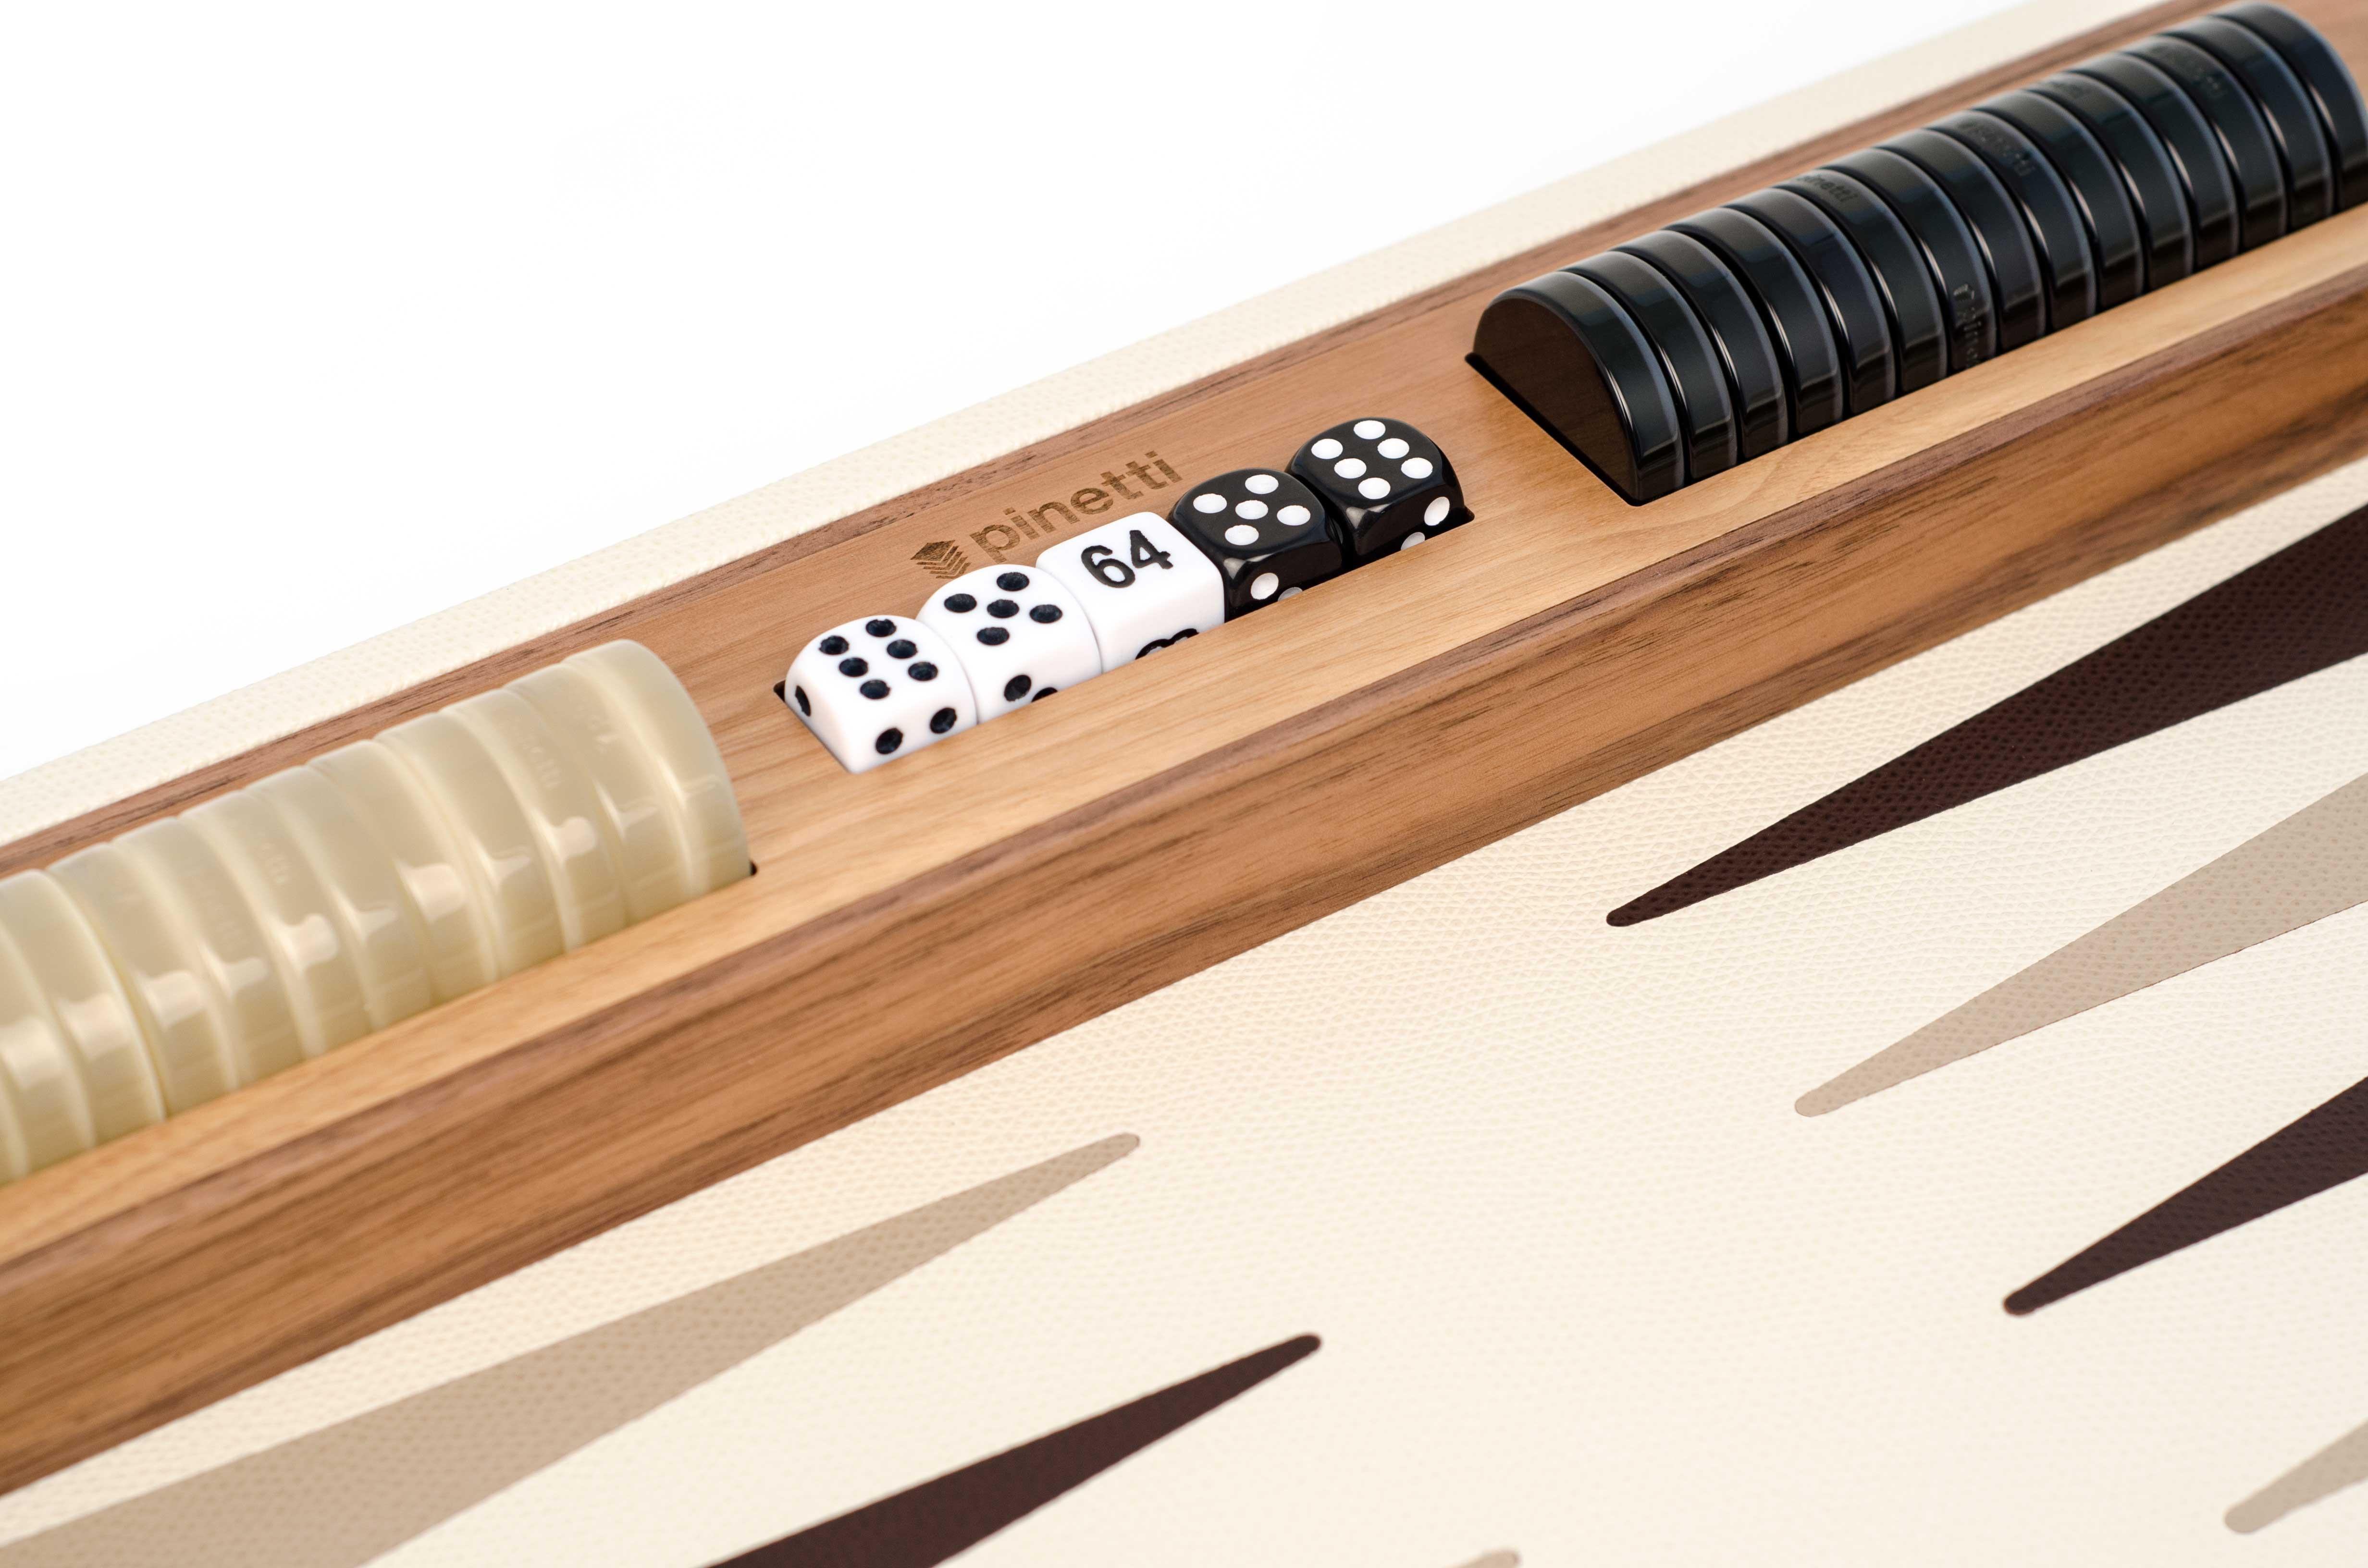 backgammon leather set